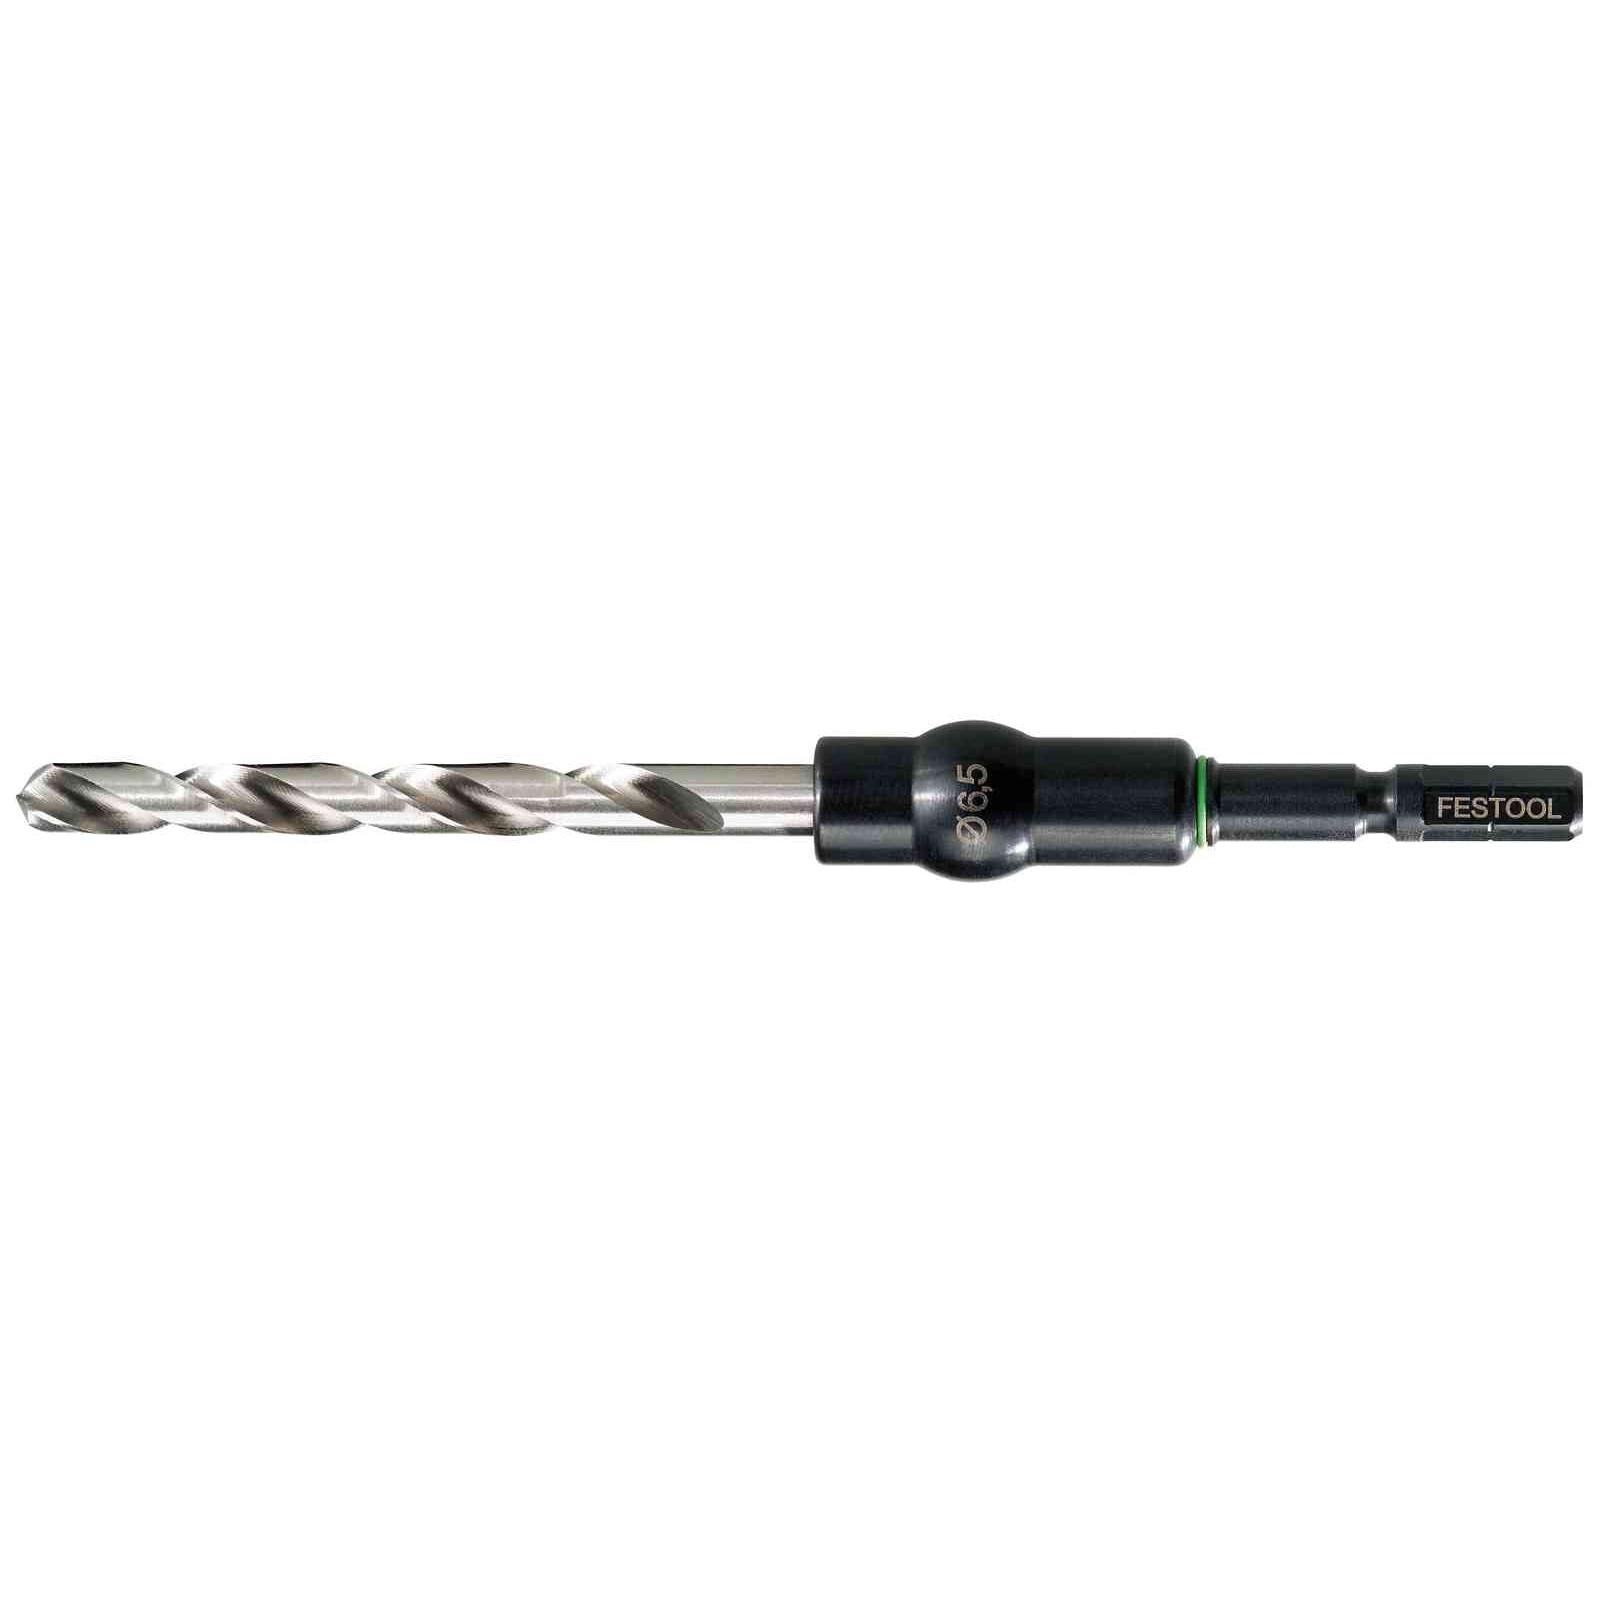 Festool Twist drill bit HSS D 4,5/47 CE/M-Set 493424 Power Tool Services